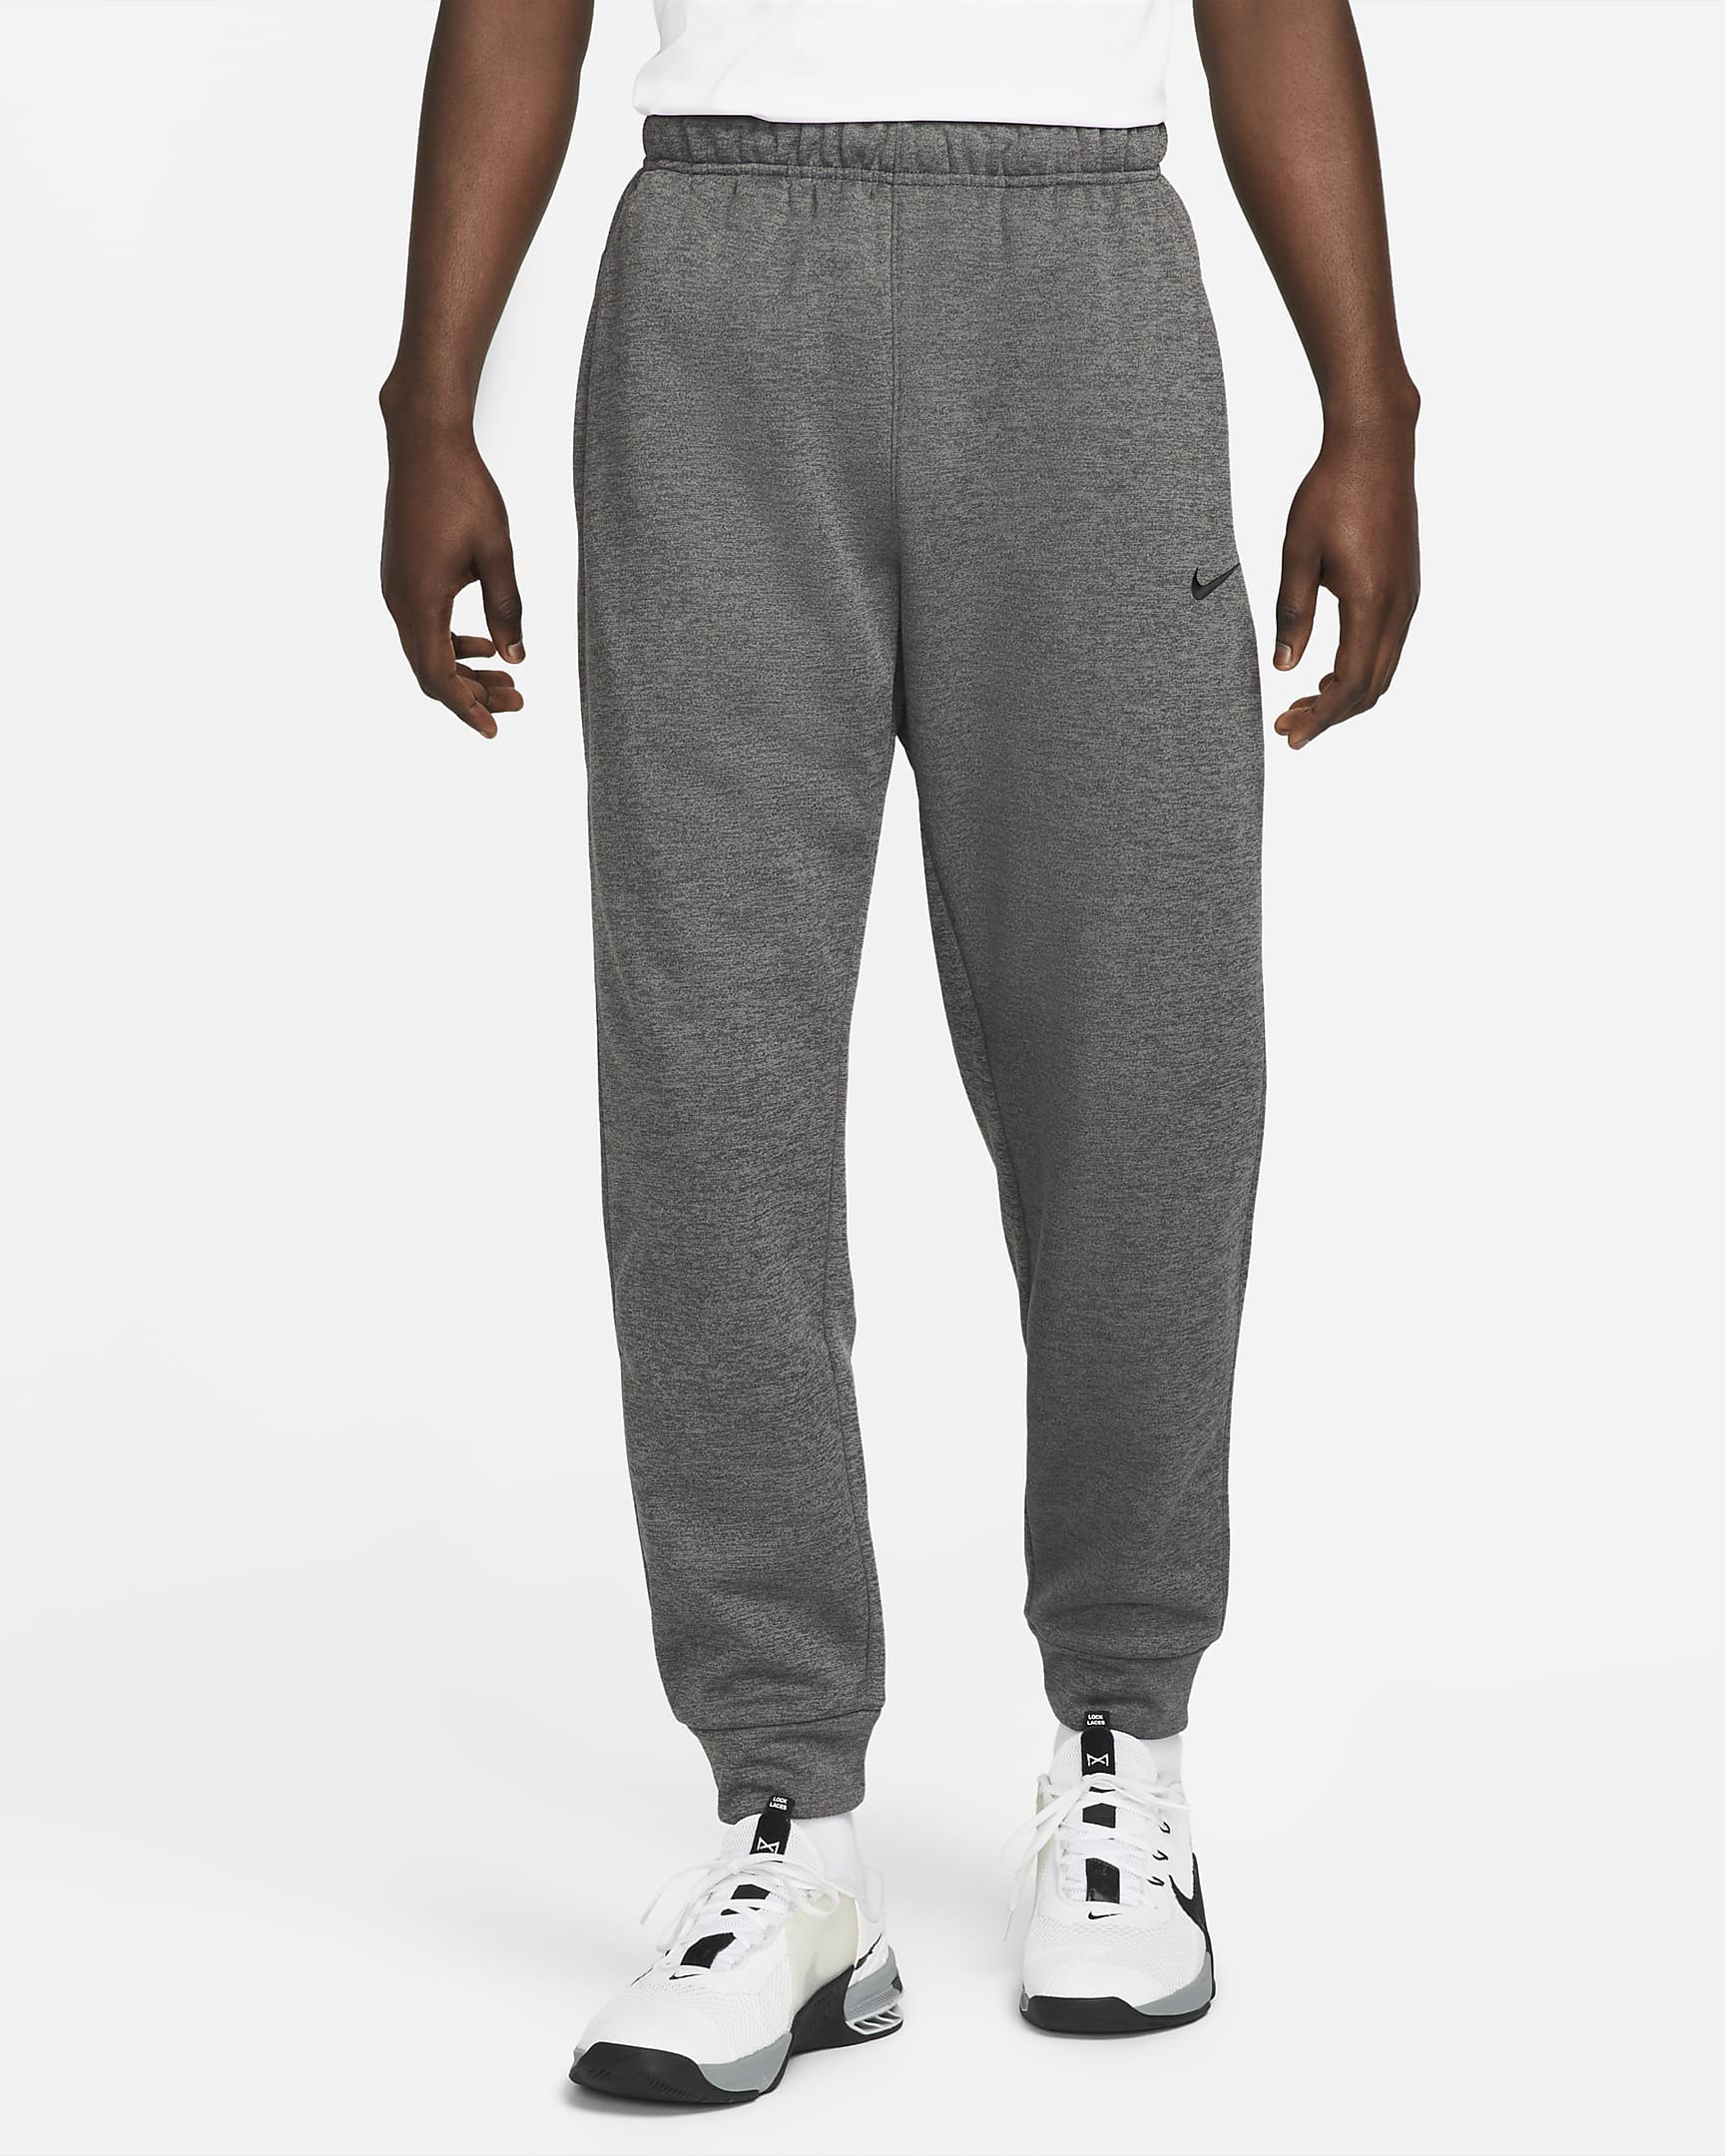 Pantalon Nike Therma - Grau